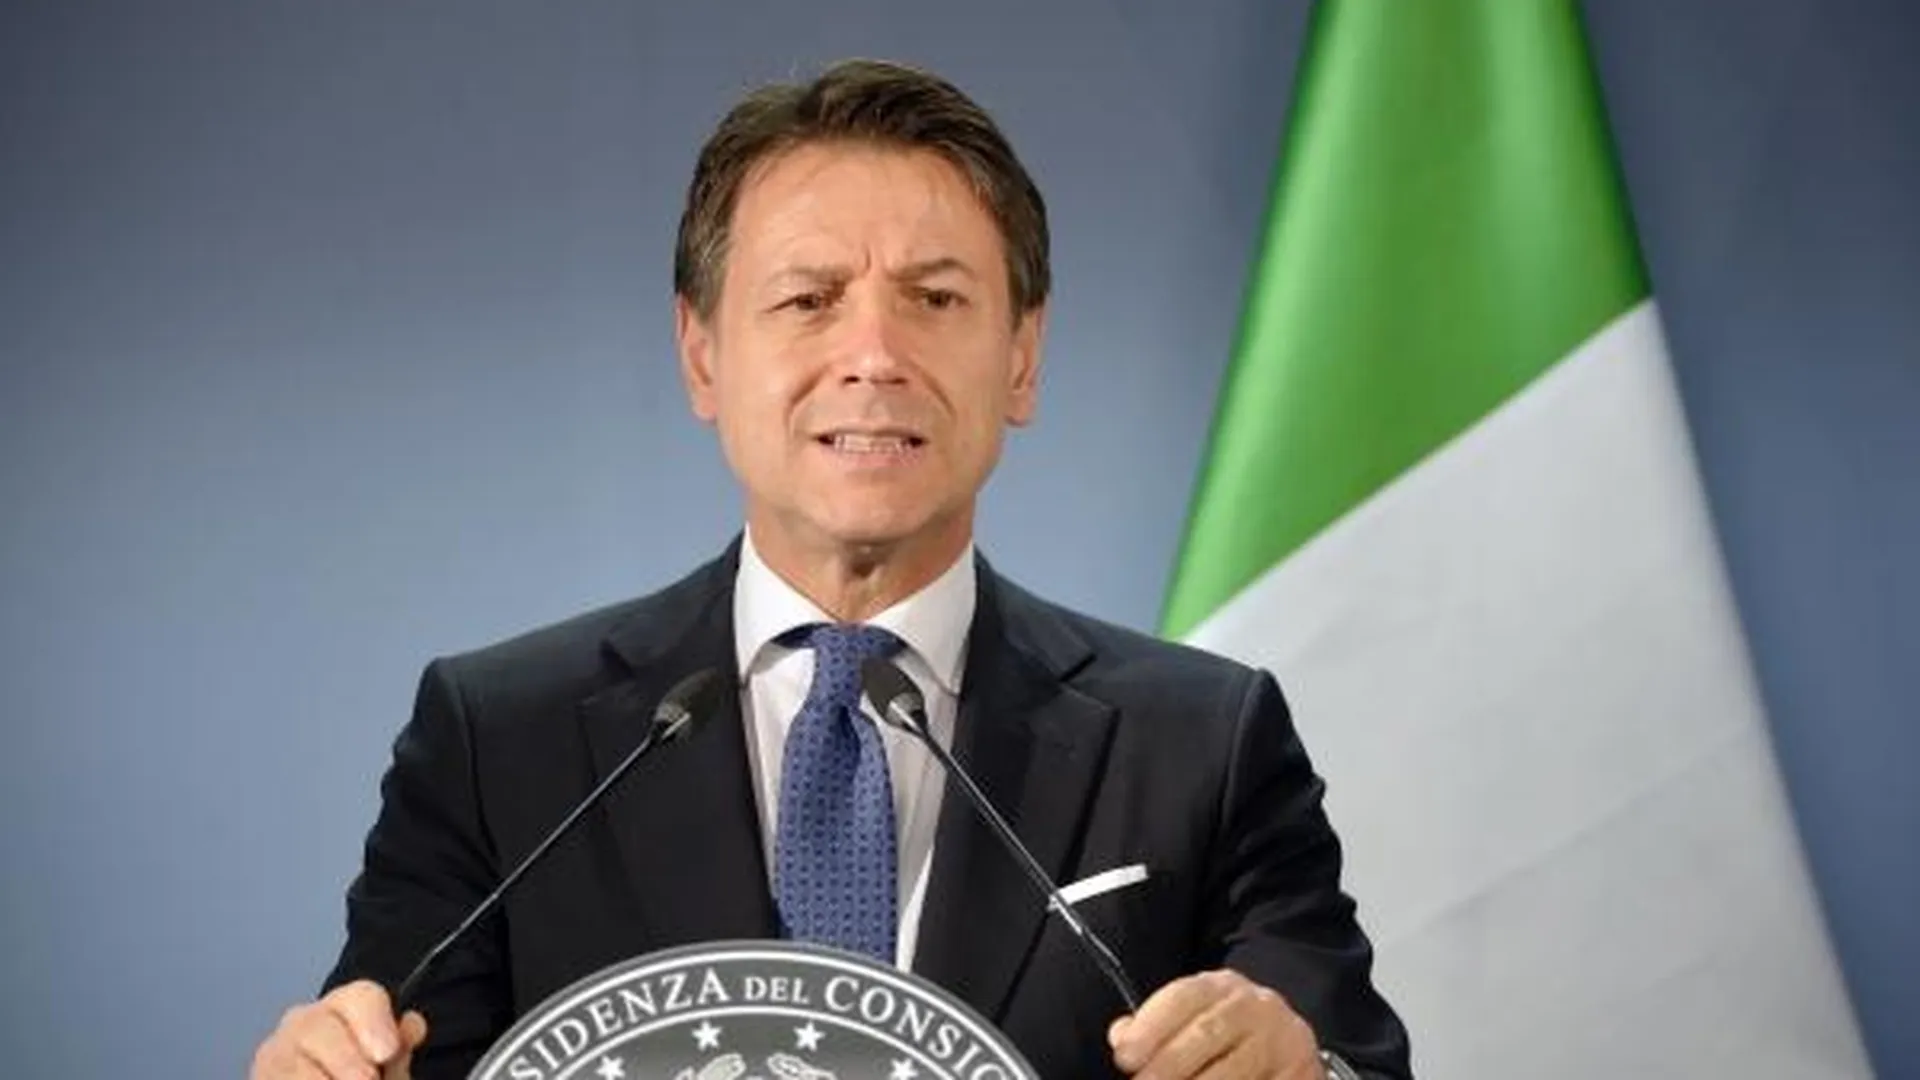 Бывший премьер-министр Италии Конте заявил, что Зеленский не должен в одиночку определять условия мира